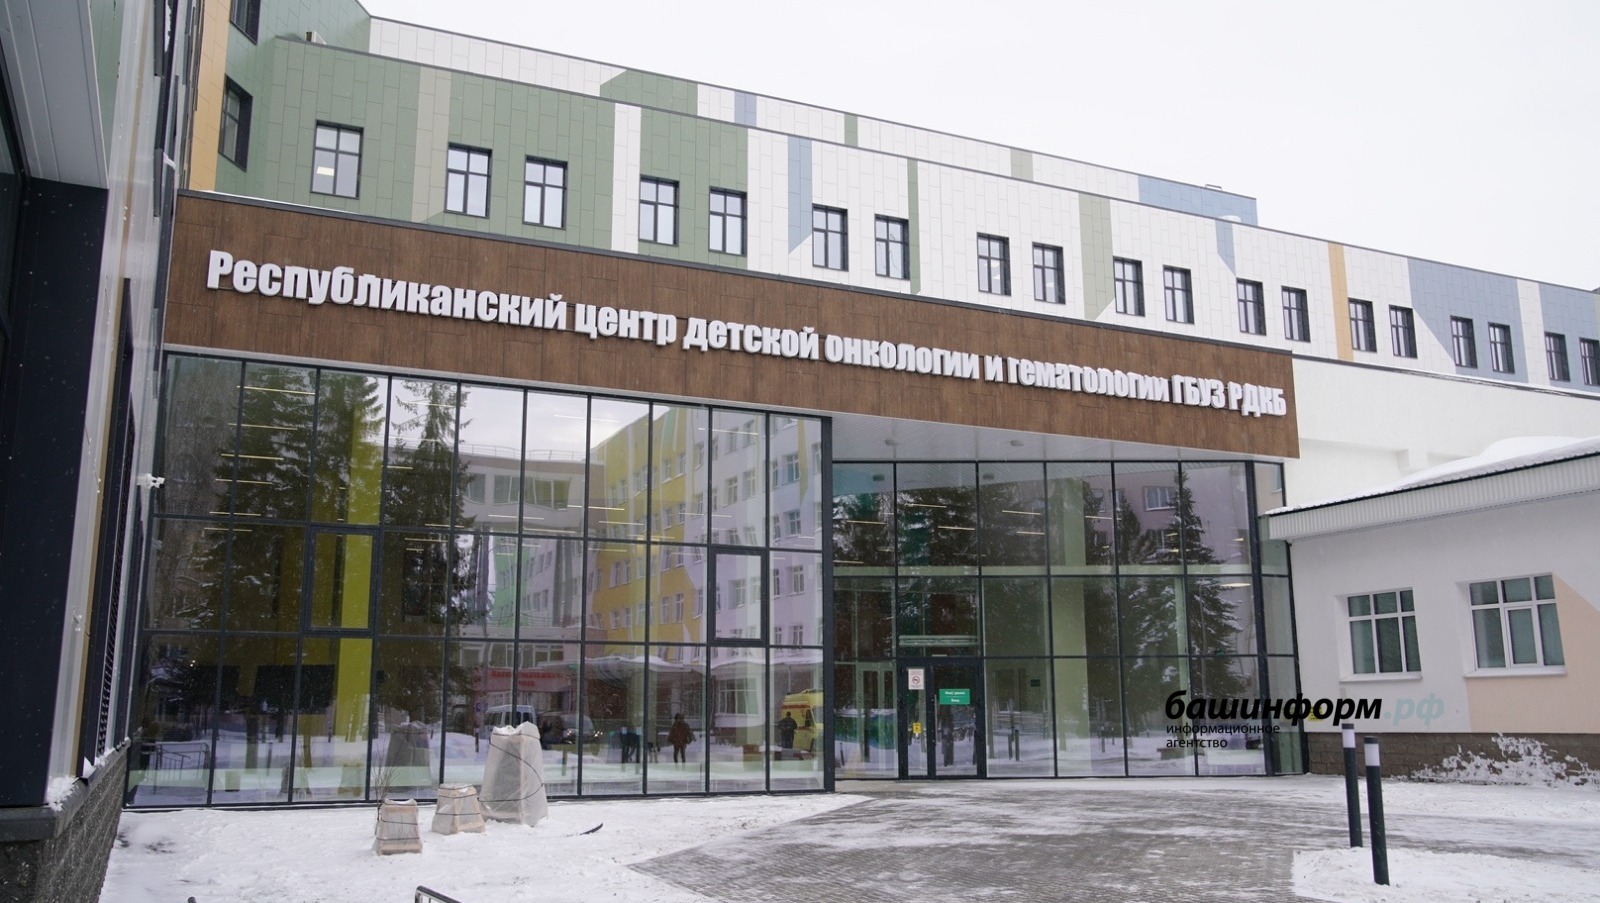 Владимир Путин высоко оценил открывшийся в столице Башкирии новый Центр детской онкологии